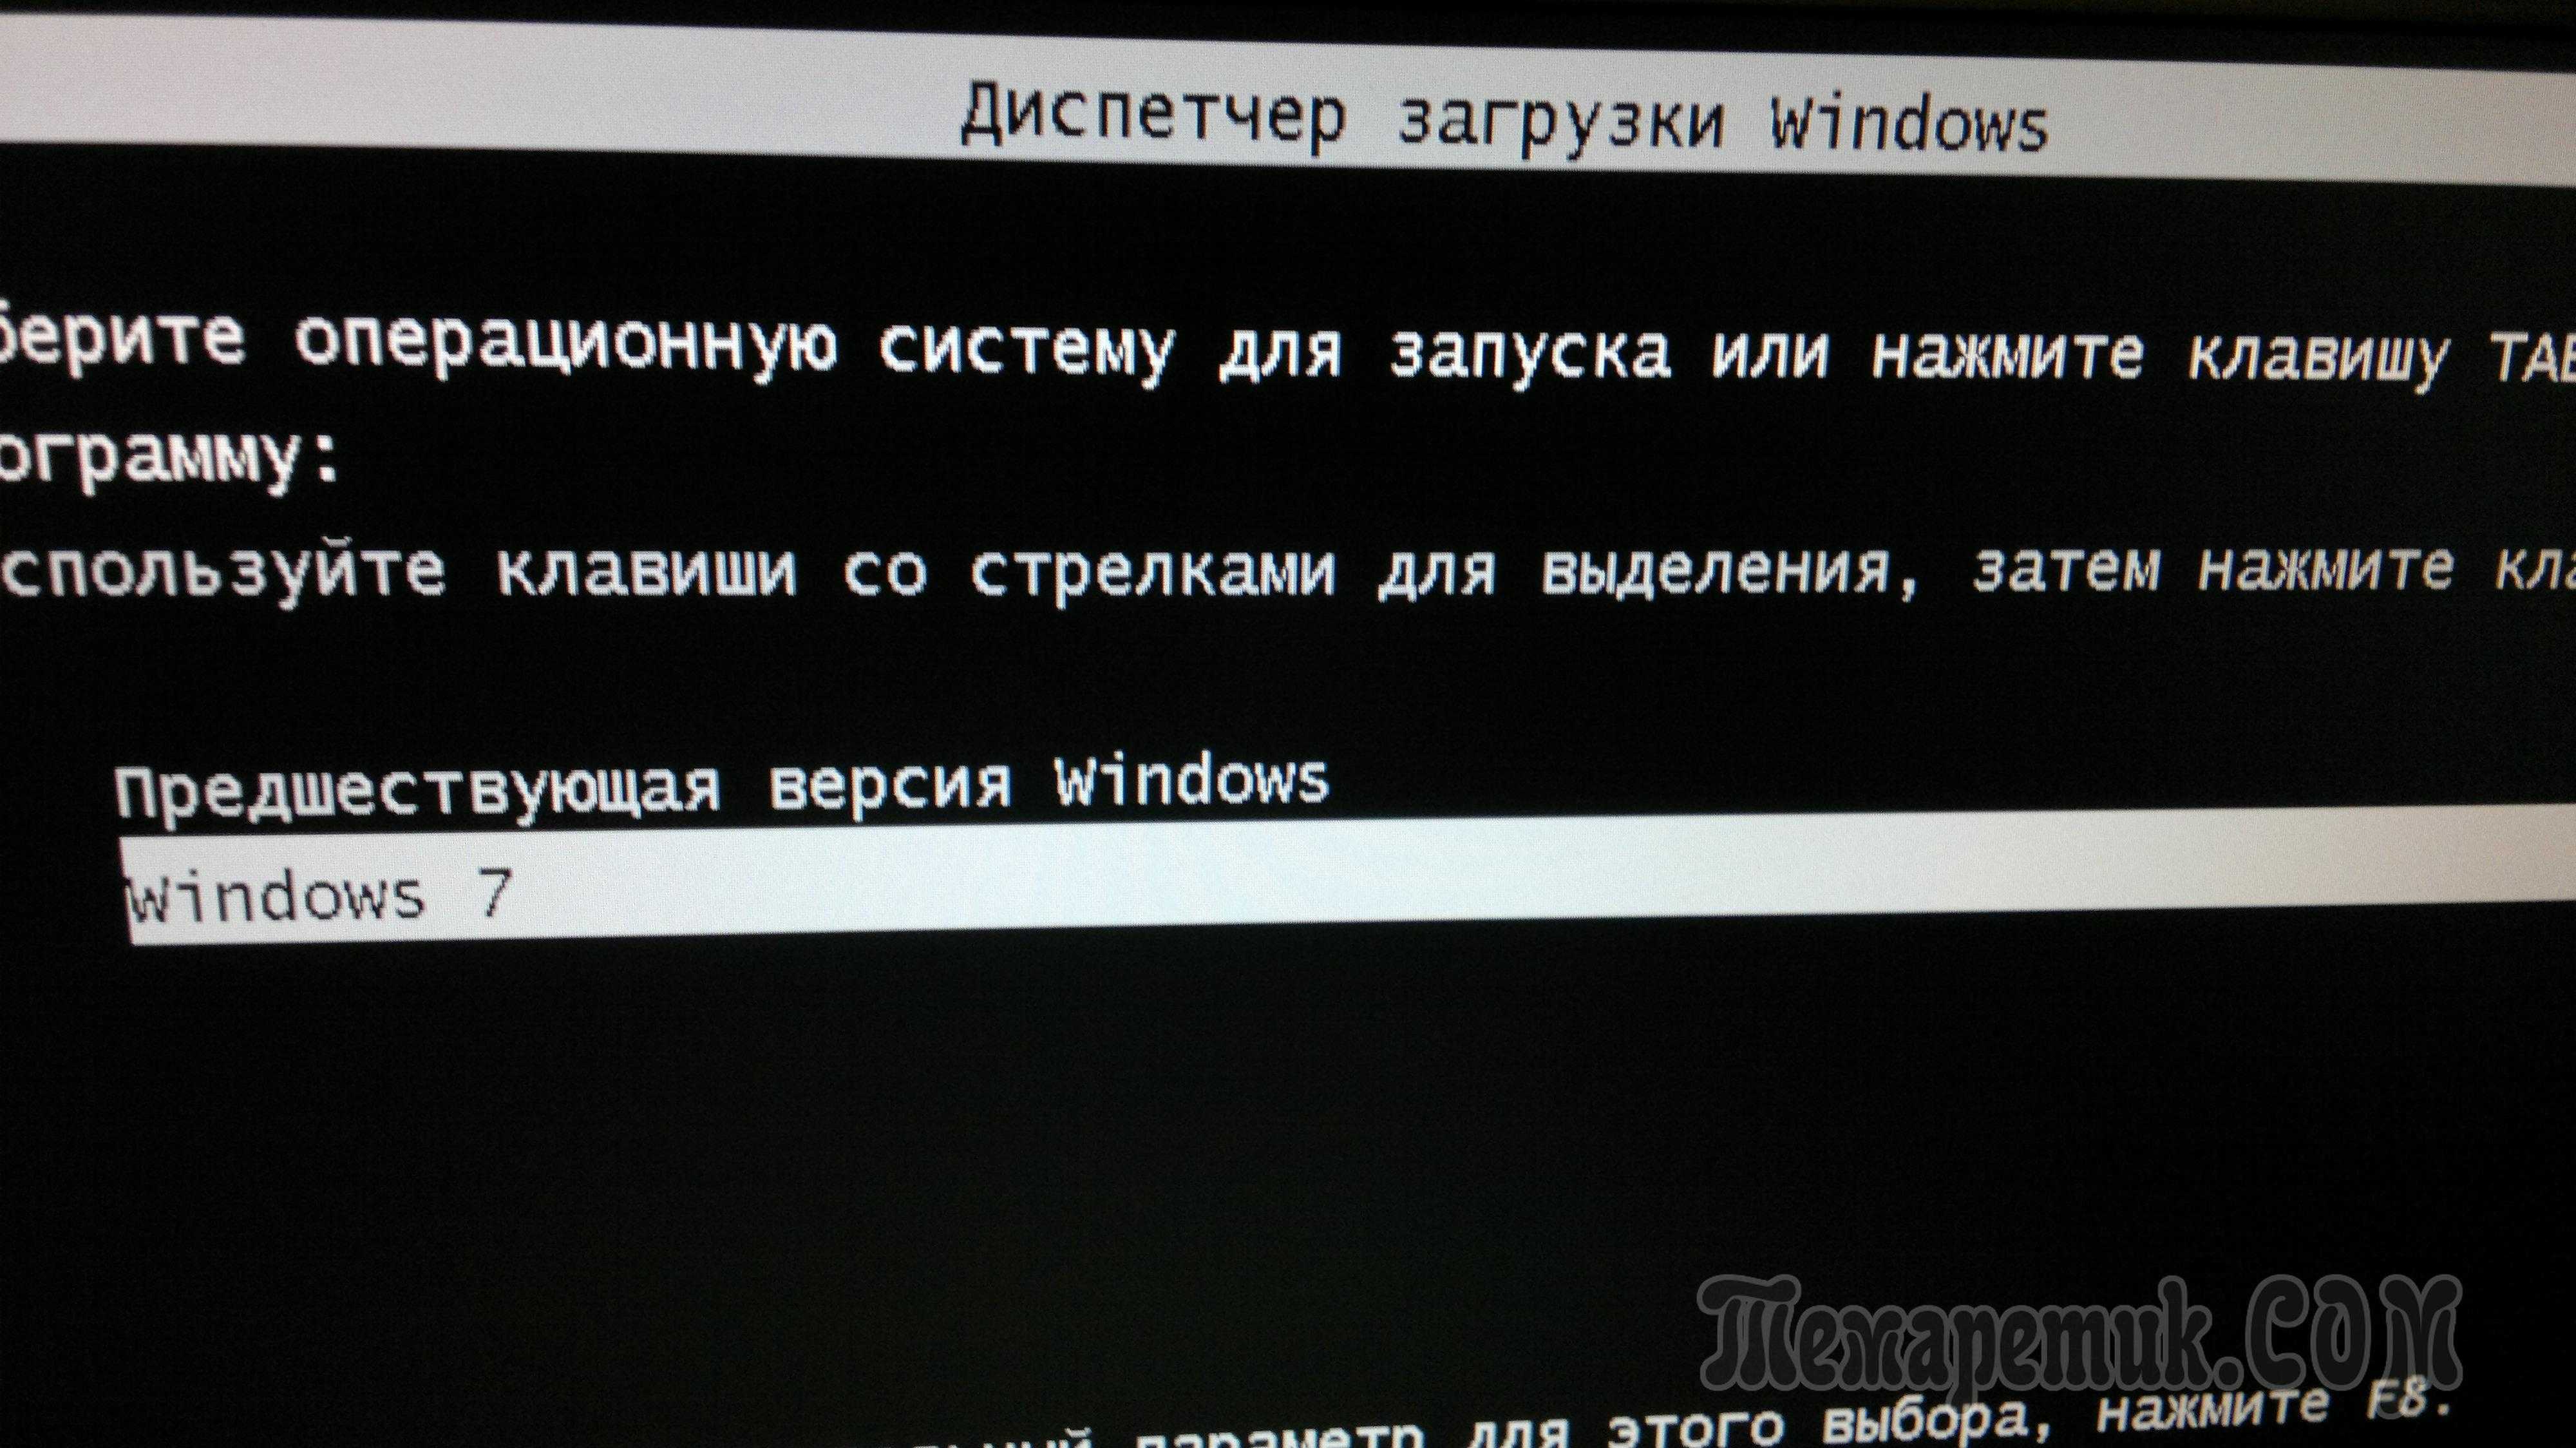 При загрузке windows 7 появляется черный экран